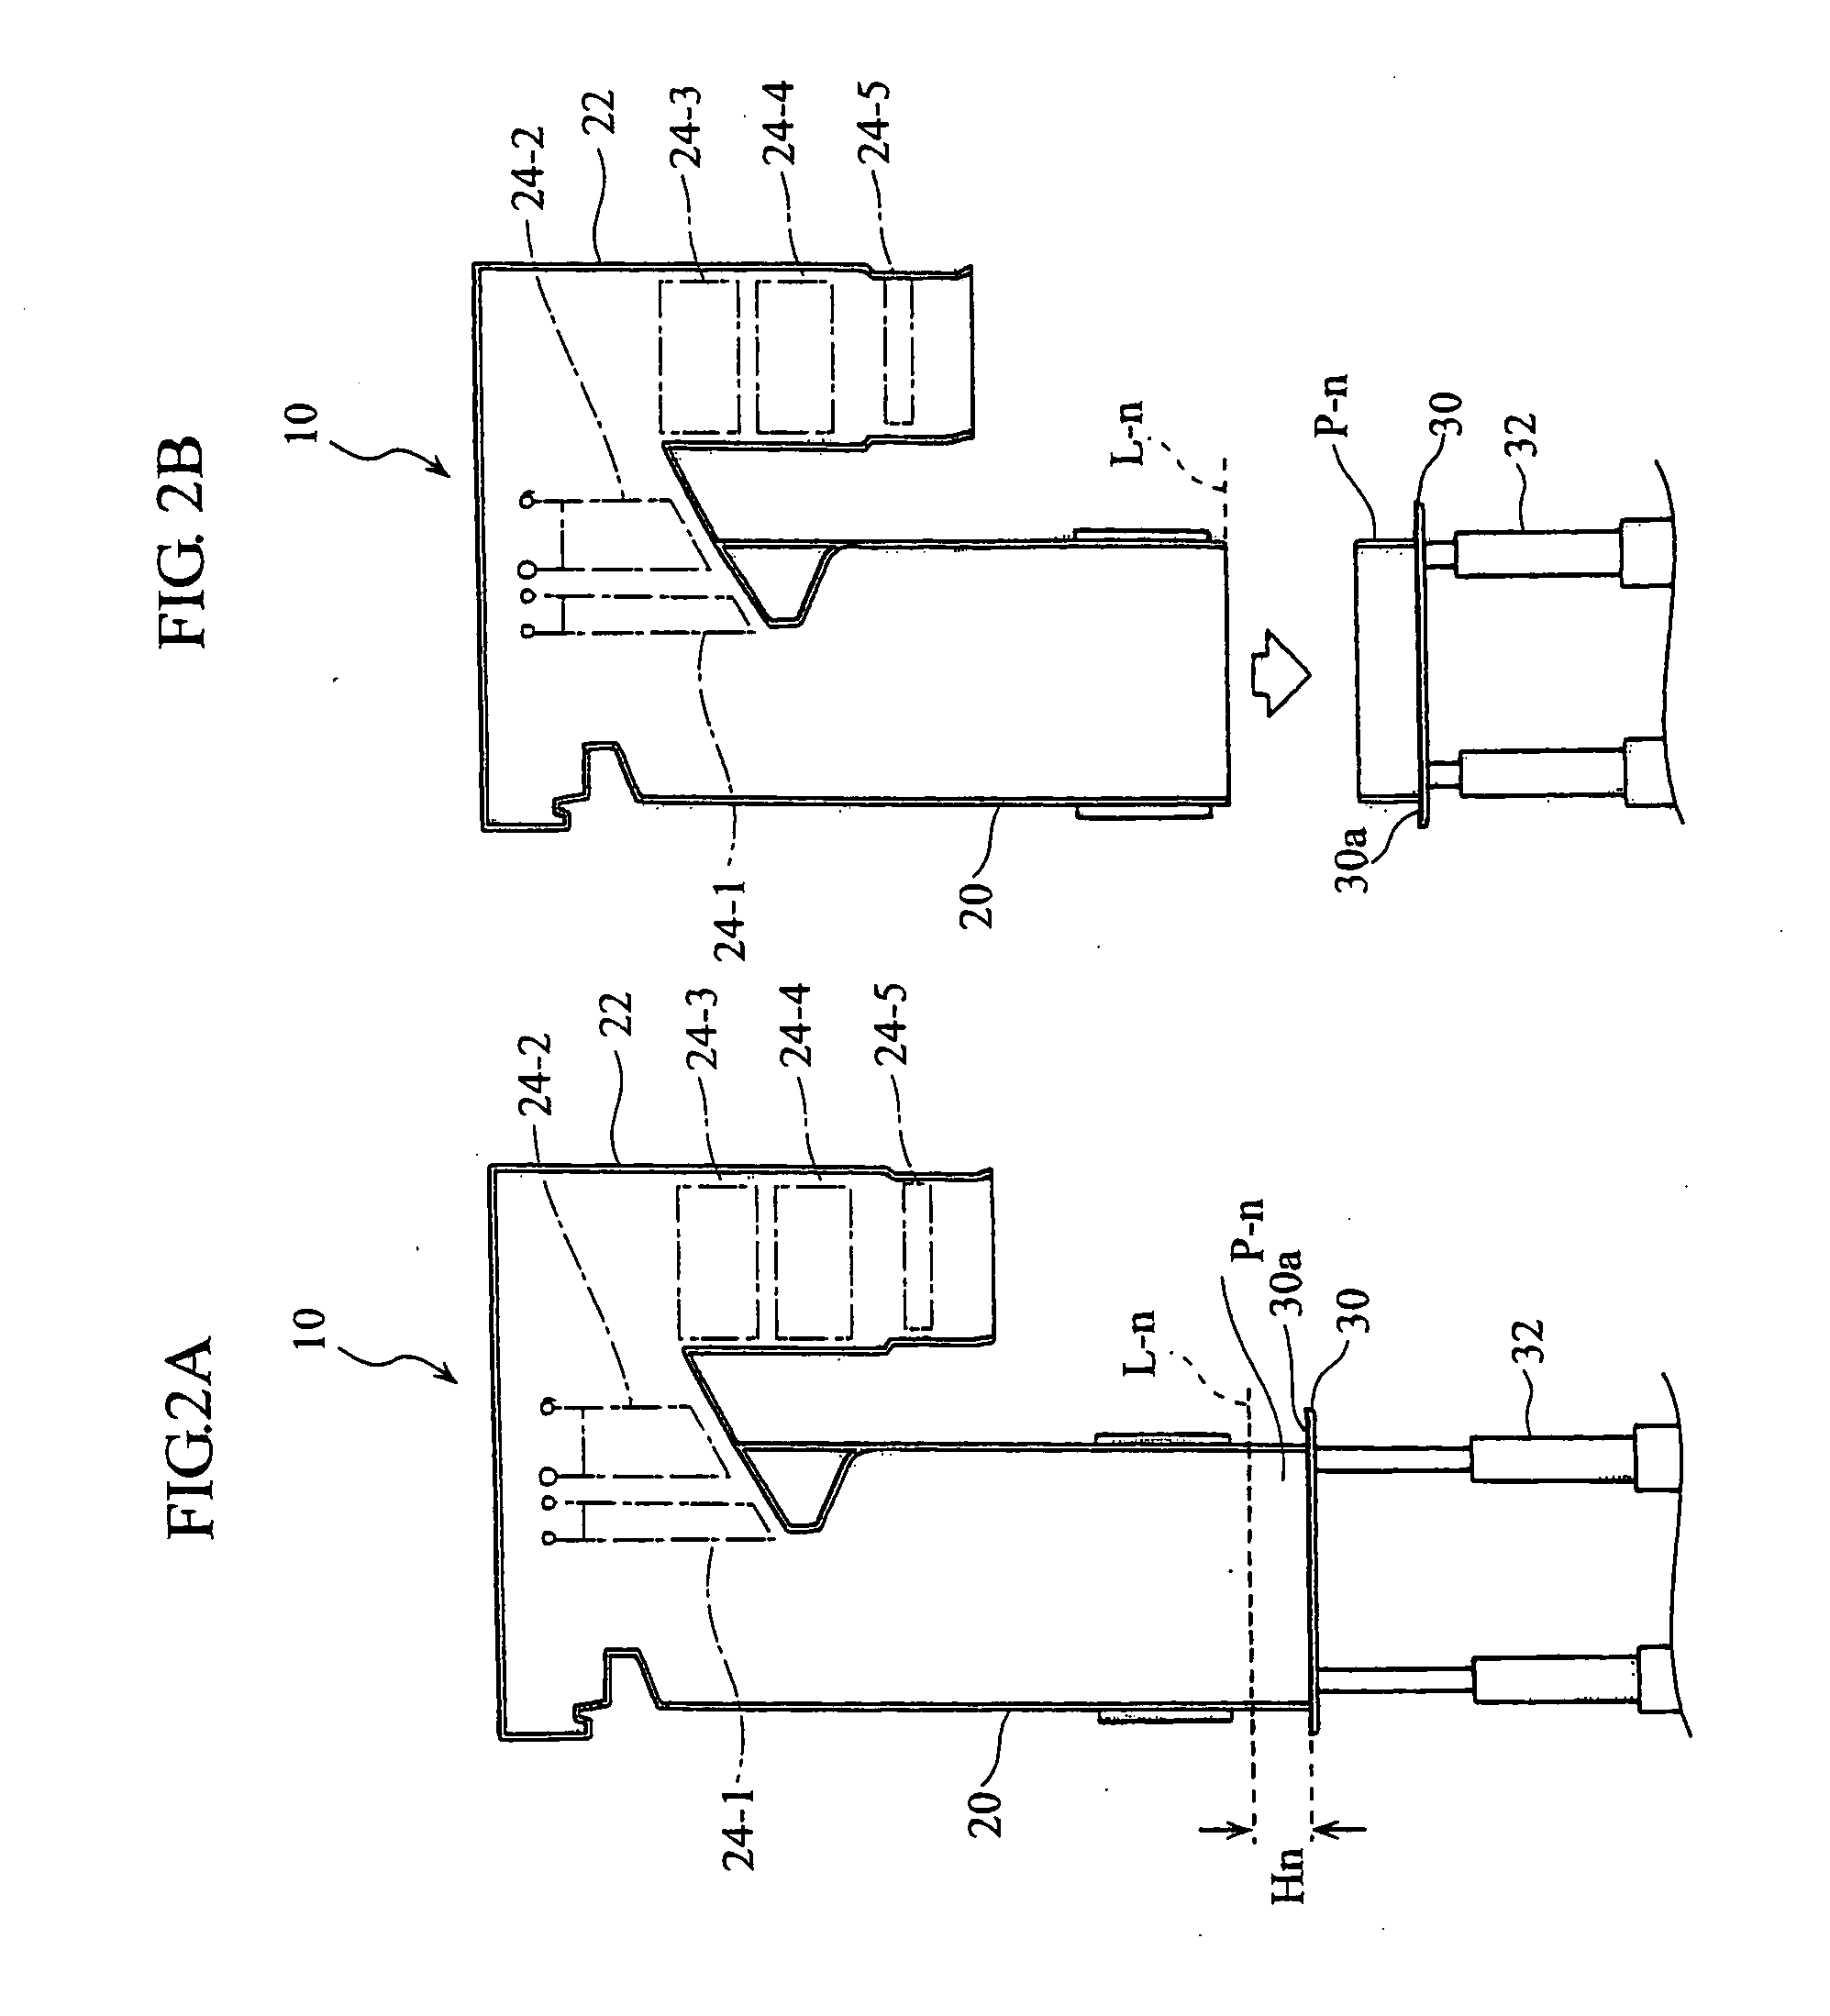 Method for disassembling a boiler